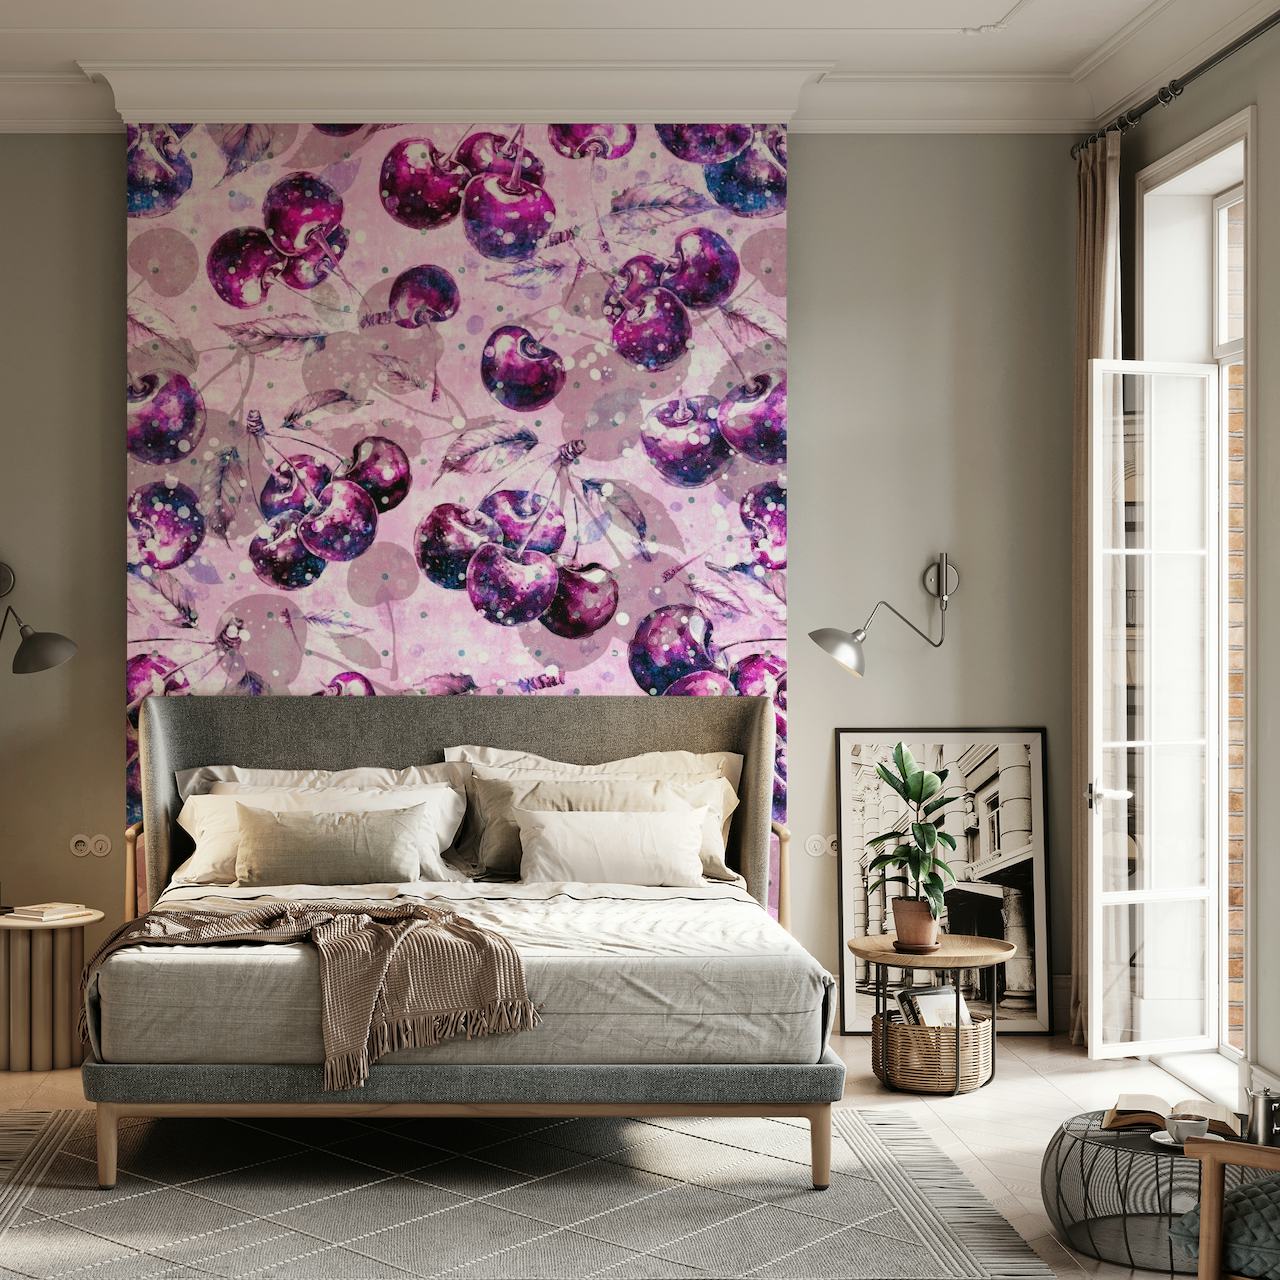 Cerejas de estilo fantasia com glitter em um fotomural vinílico de parede rosa suave